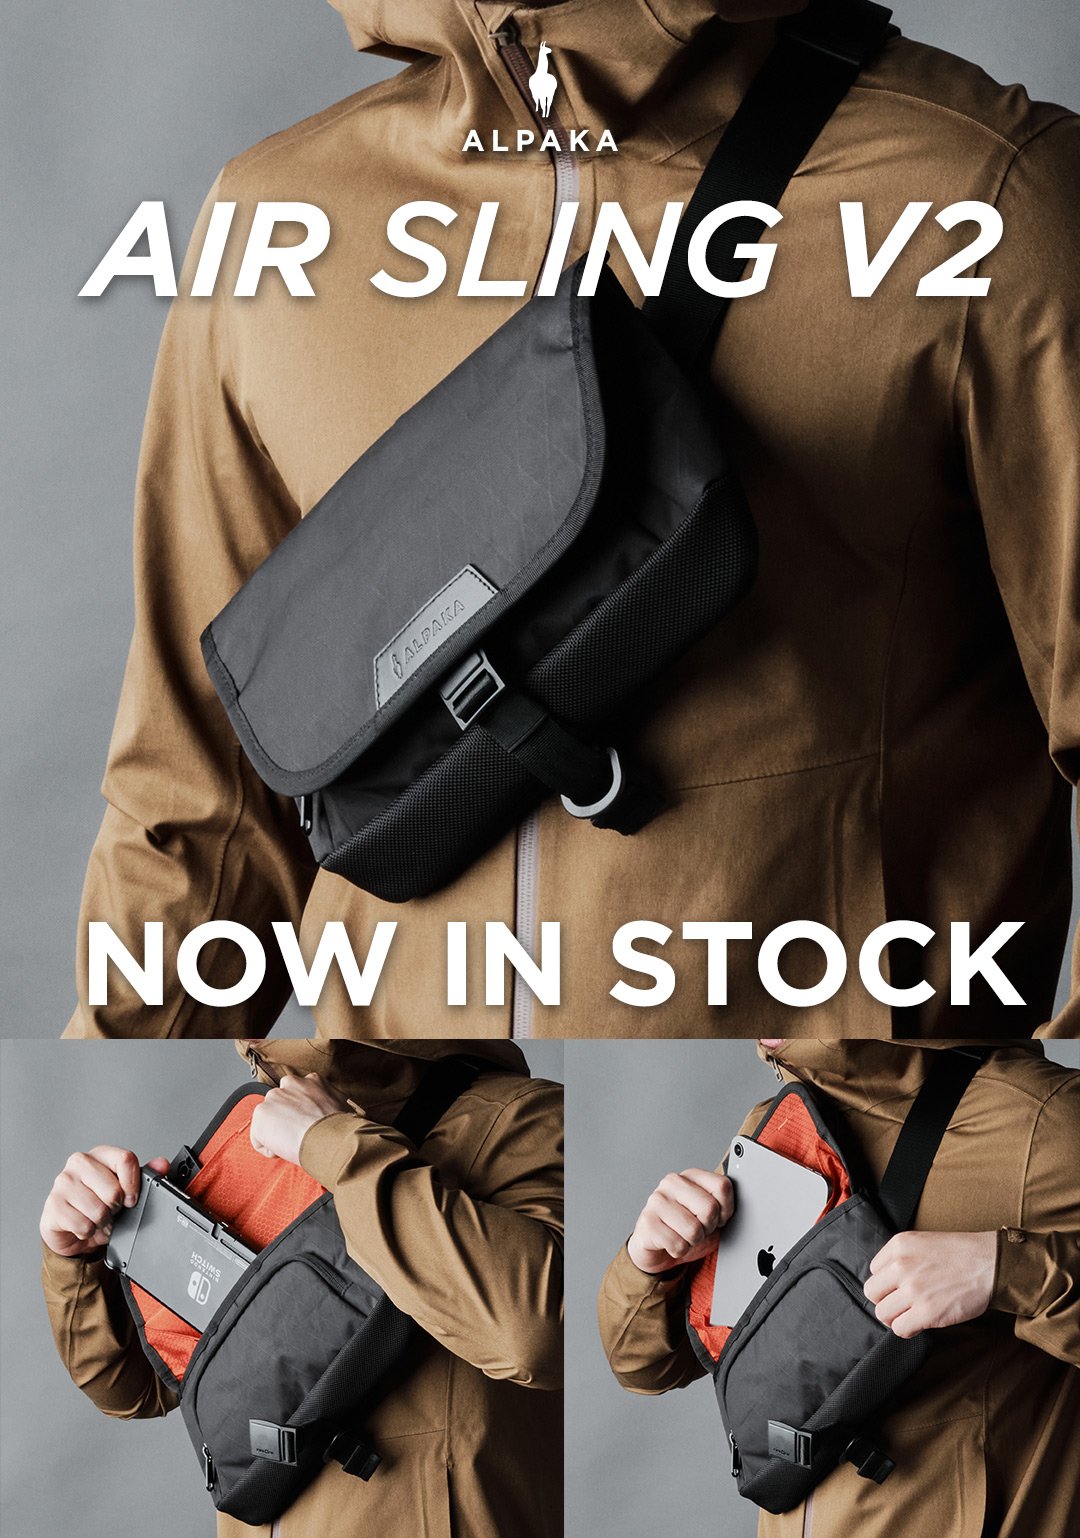 Air Sling V2